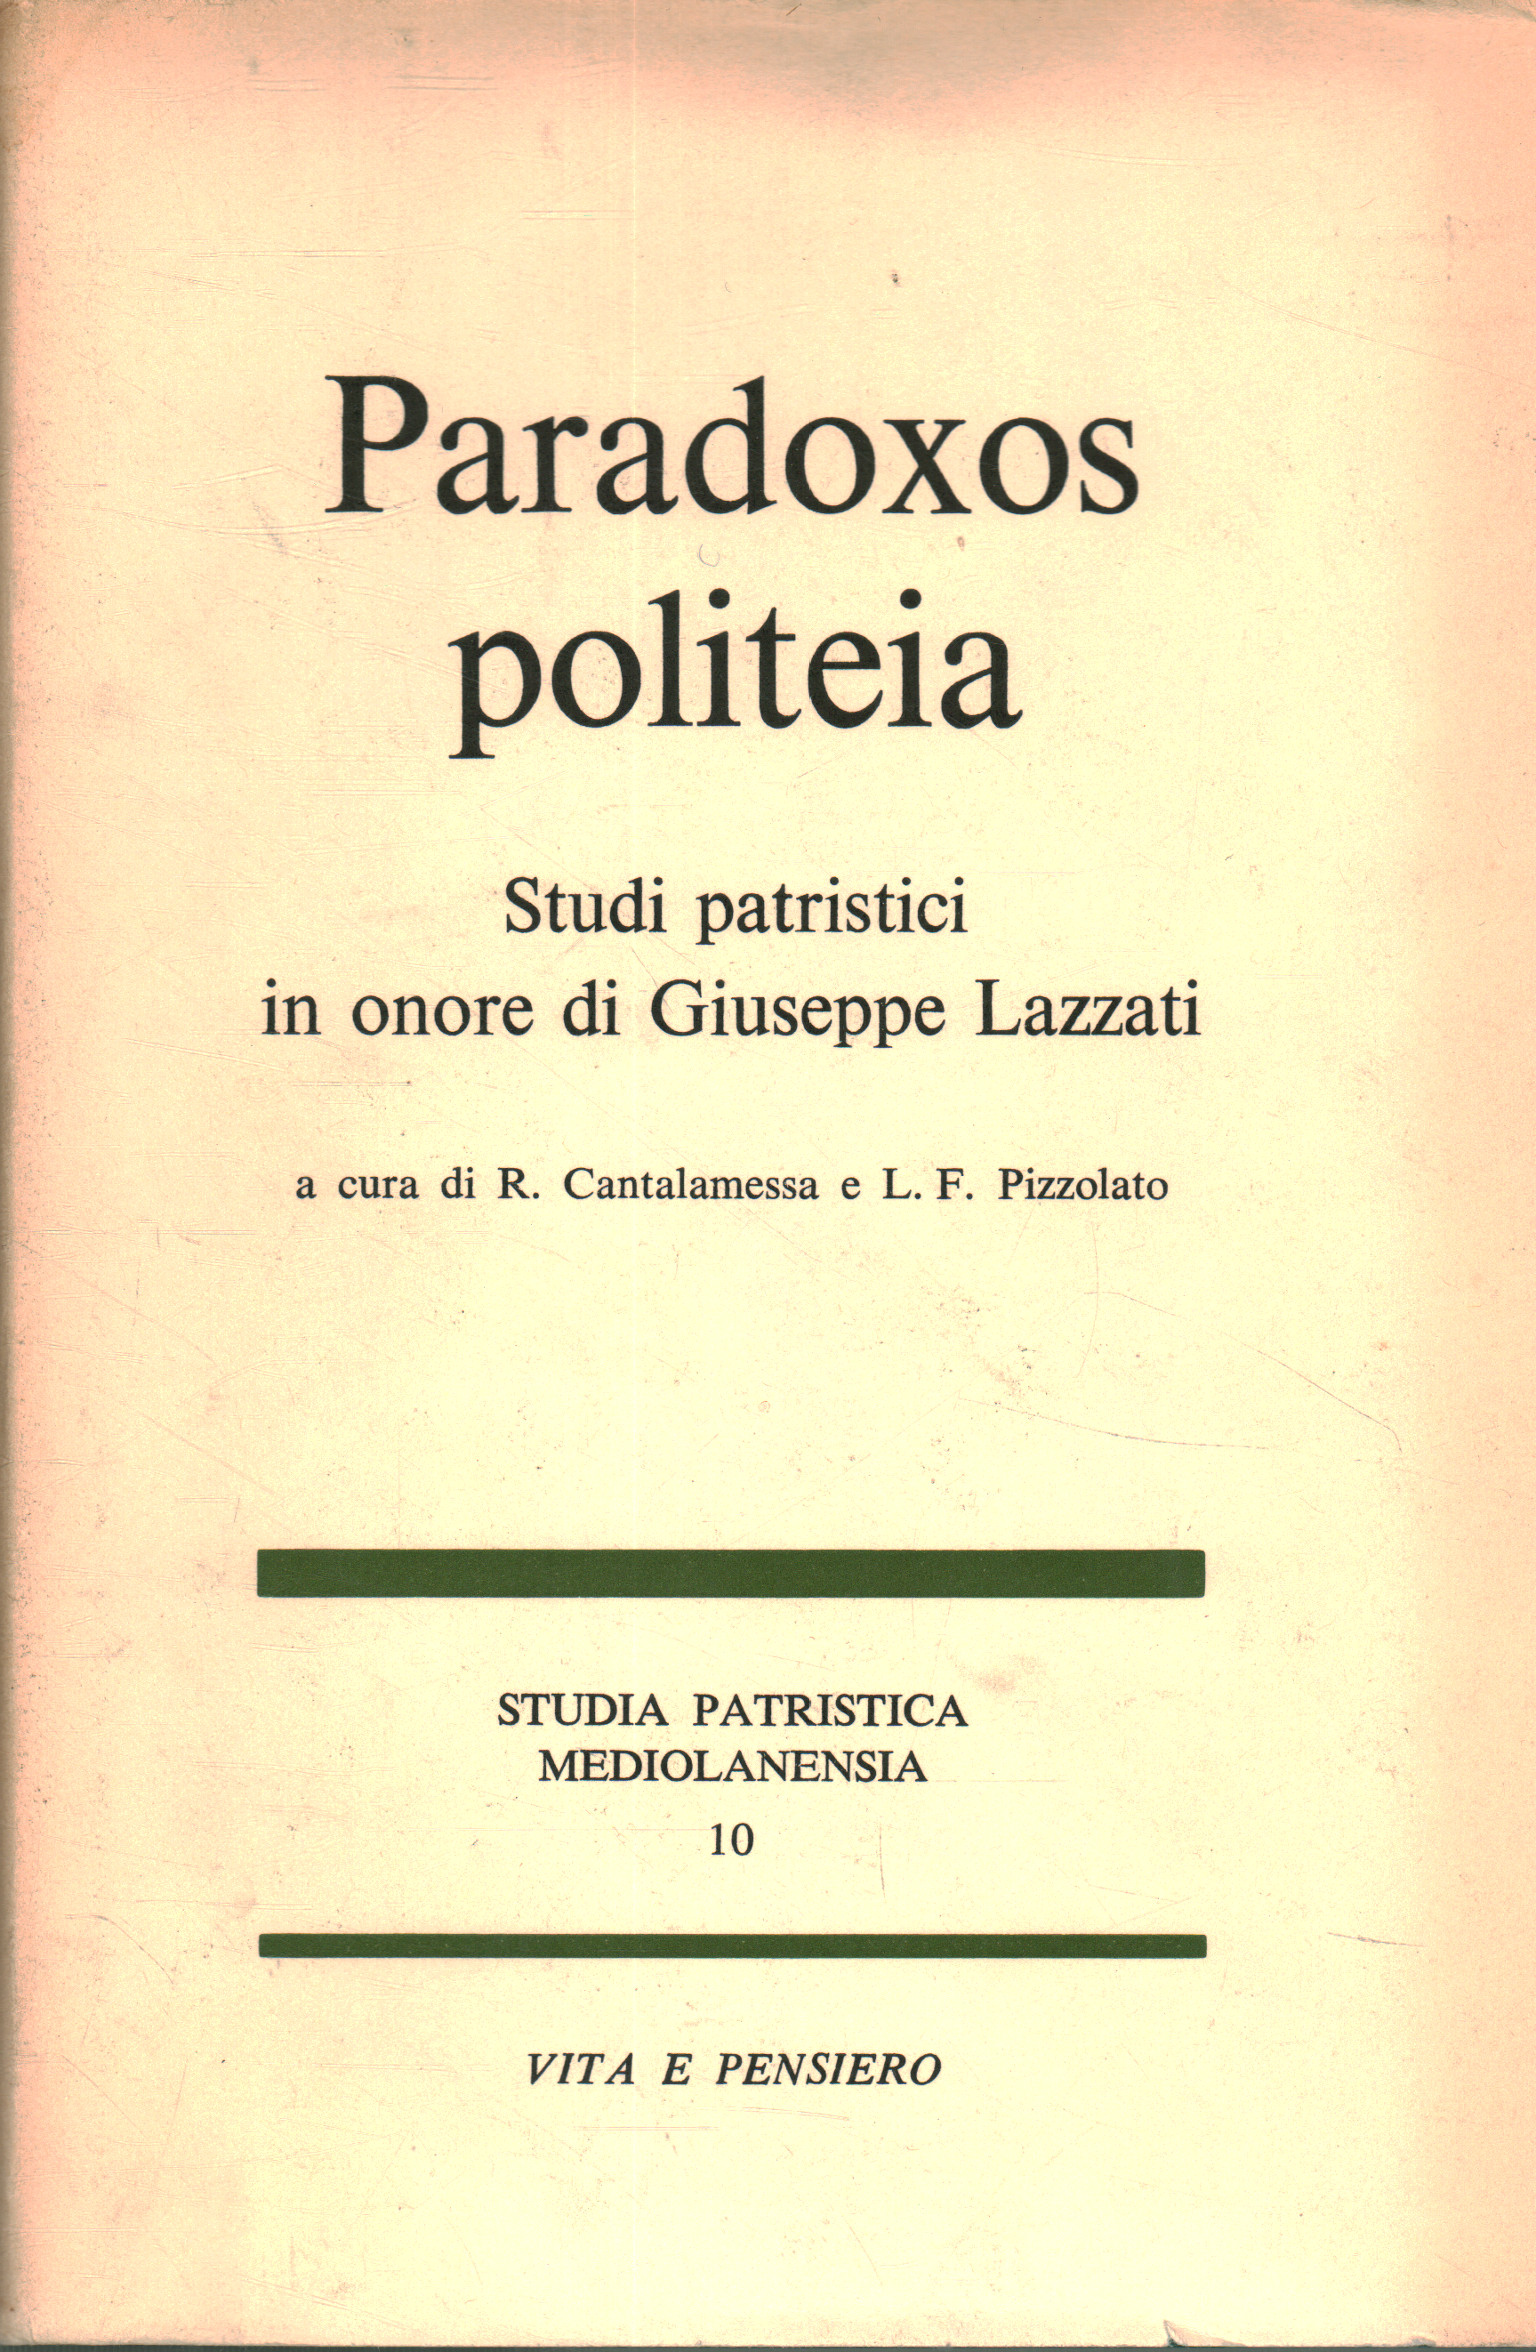 Paradoxox politeia. Études patristiques en l'honneur de G, R. Cantalamessa L.F. Pizzolato